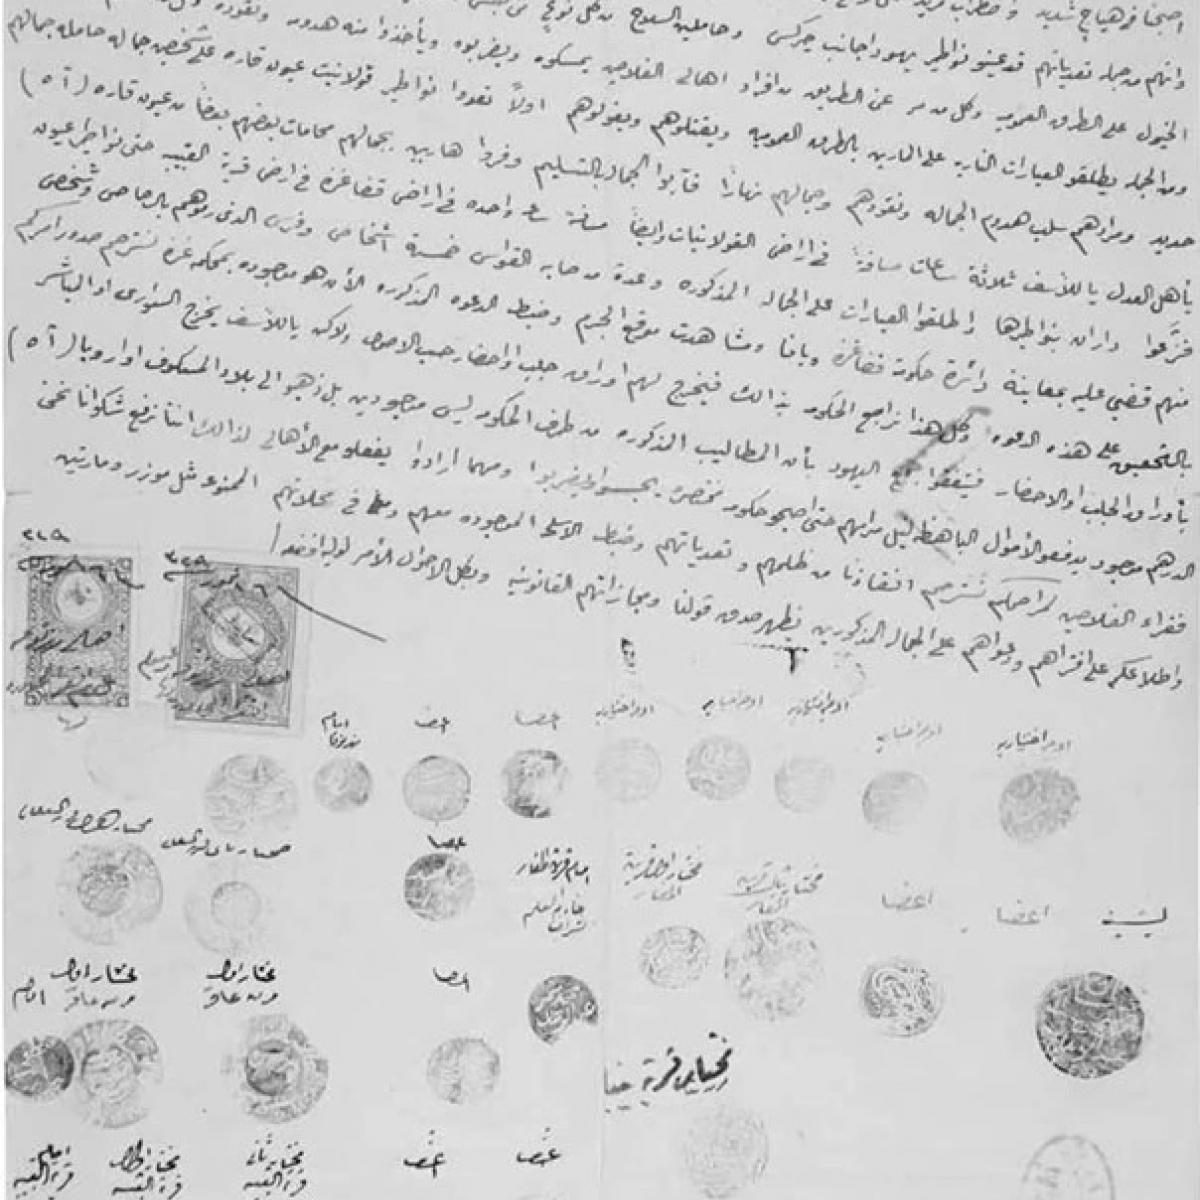 عريضة (رسالة) موجّهة إلى الباب العالي في إسطنبول مؤرخة في التاسع والعشرين من تموز/ يوليو 1913، ضد الاستيطان الصهيوني